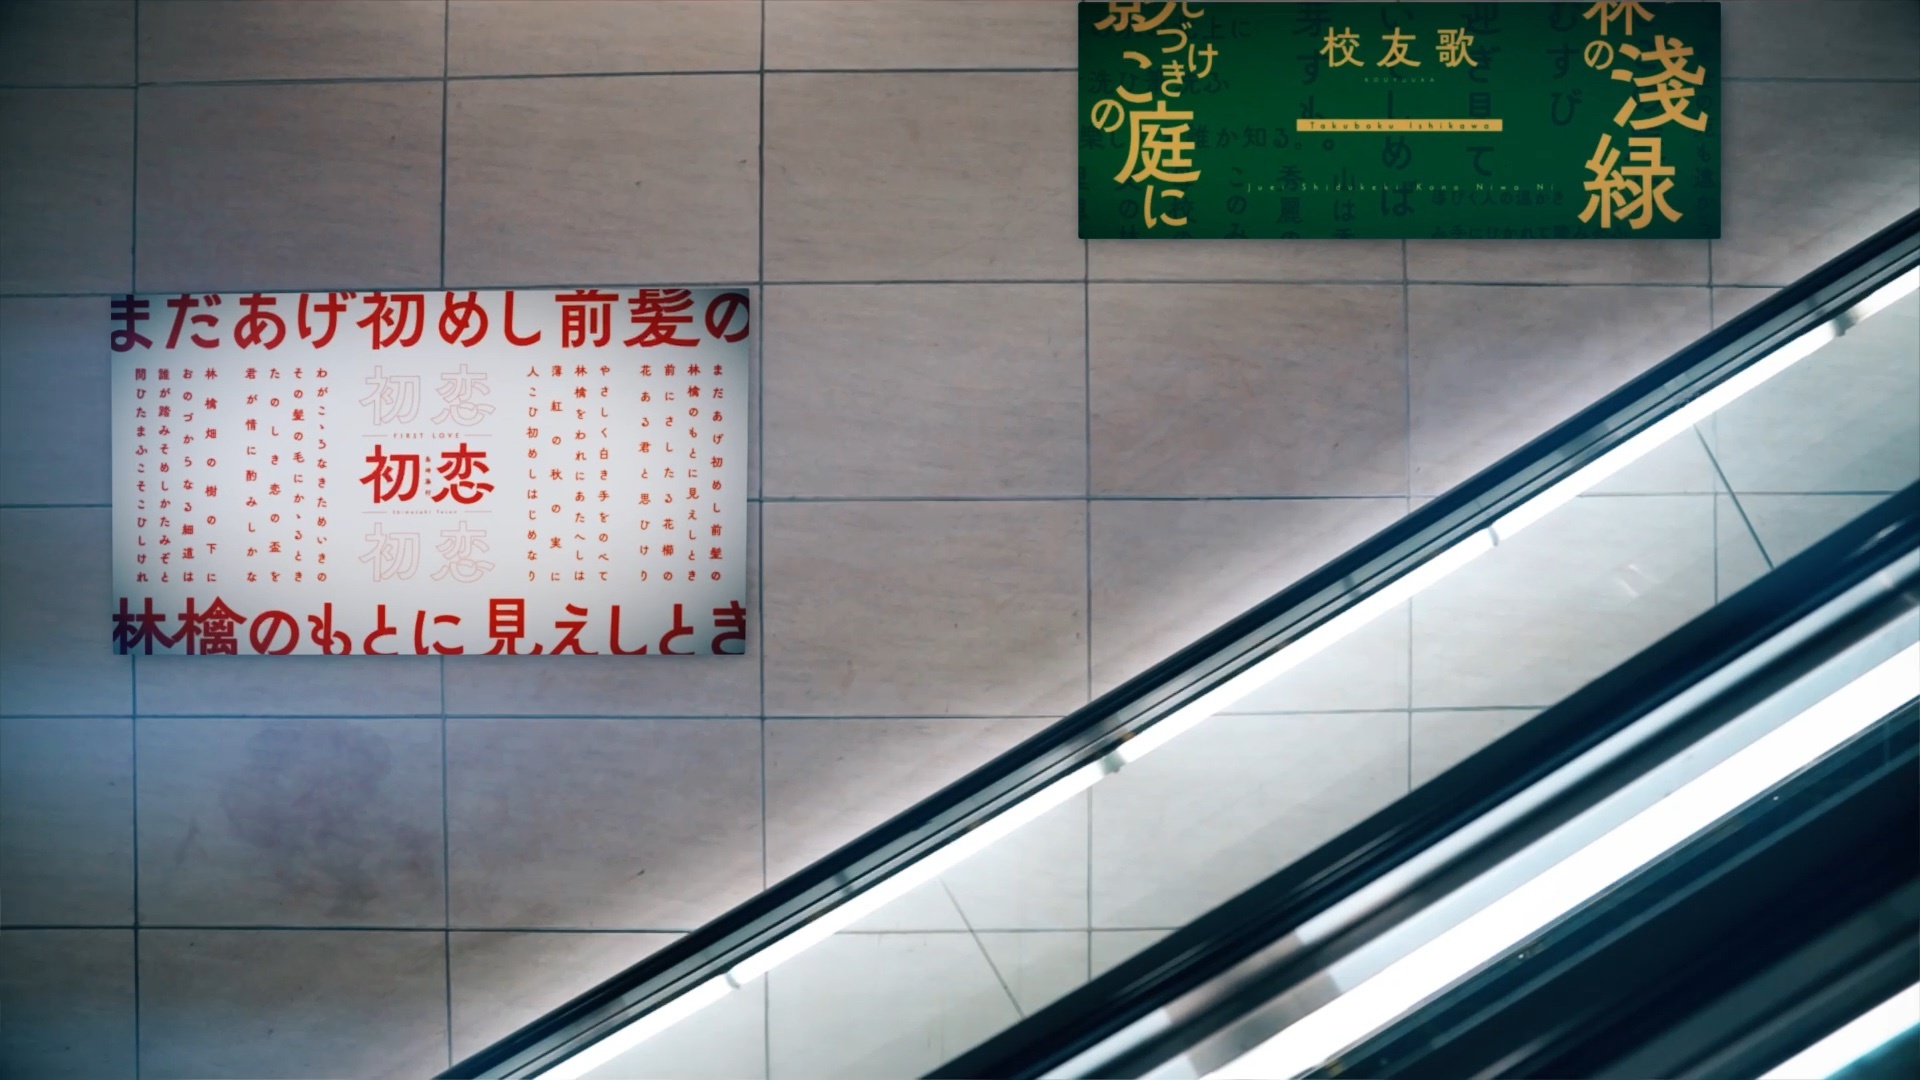 筑紫AMゴシック利用イメージ「ビル内に掲示されたポスター」